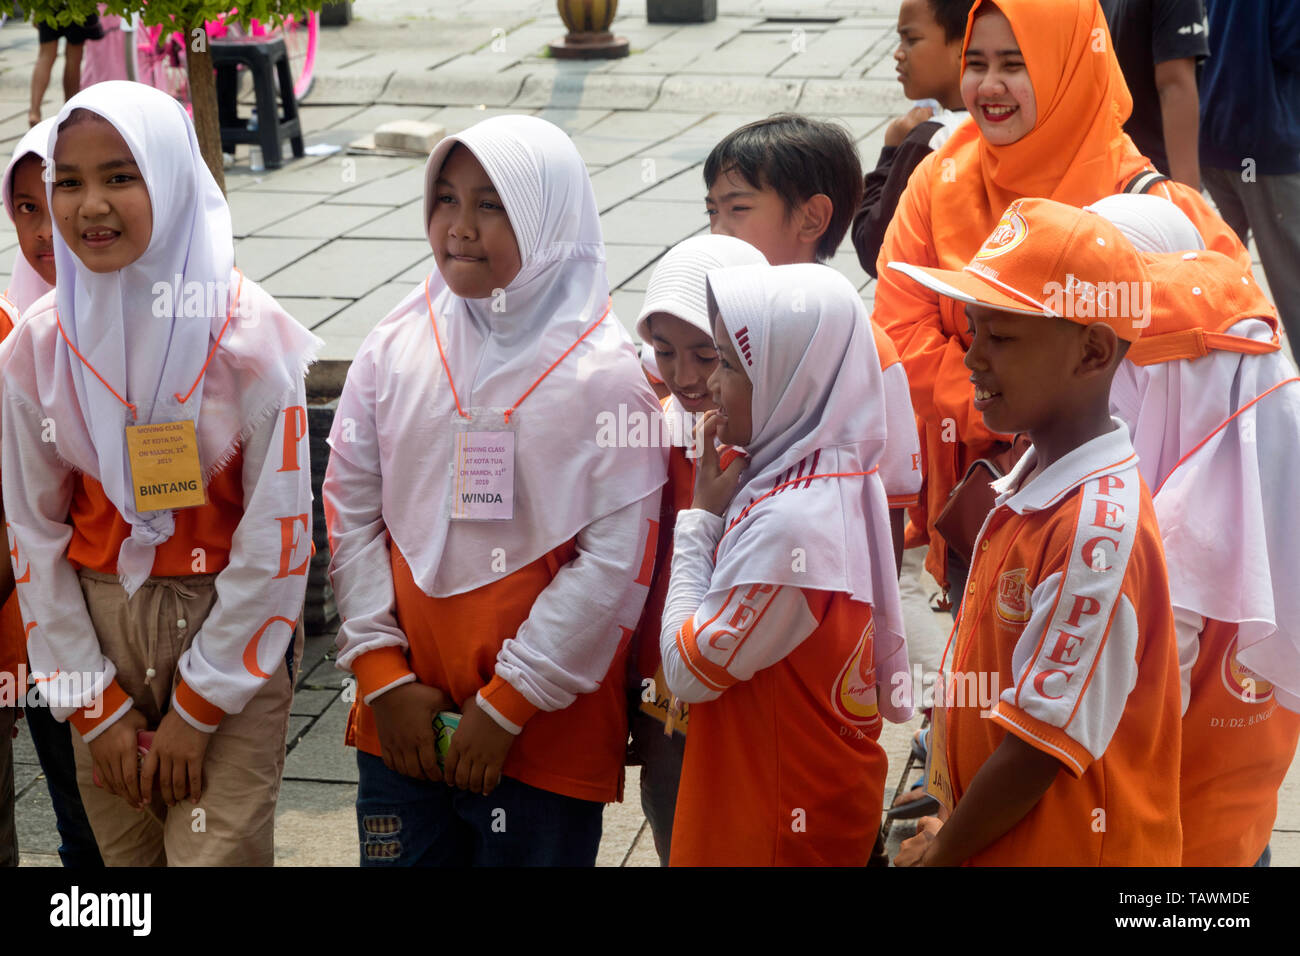 Groupe d'écoliers musulmans sur une sortie en place Fatahillah,Jakarta Indonésie Banque D'Images